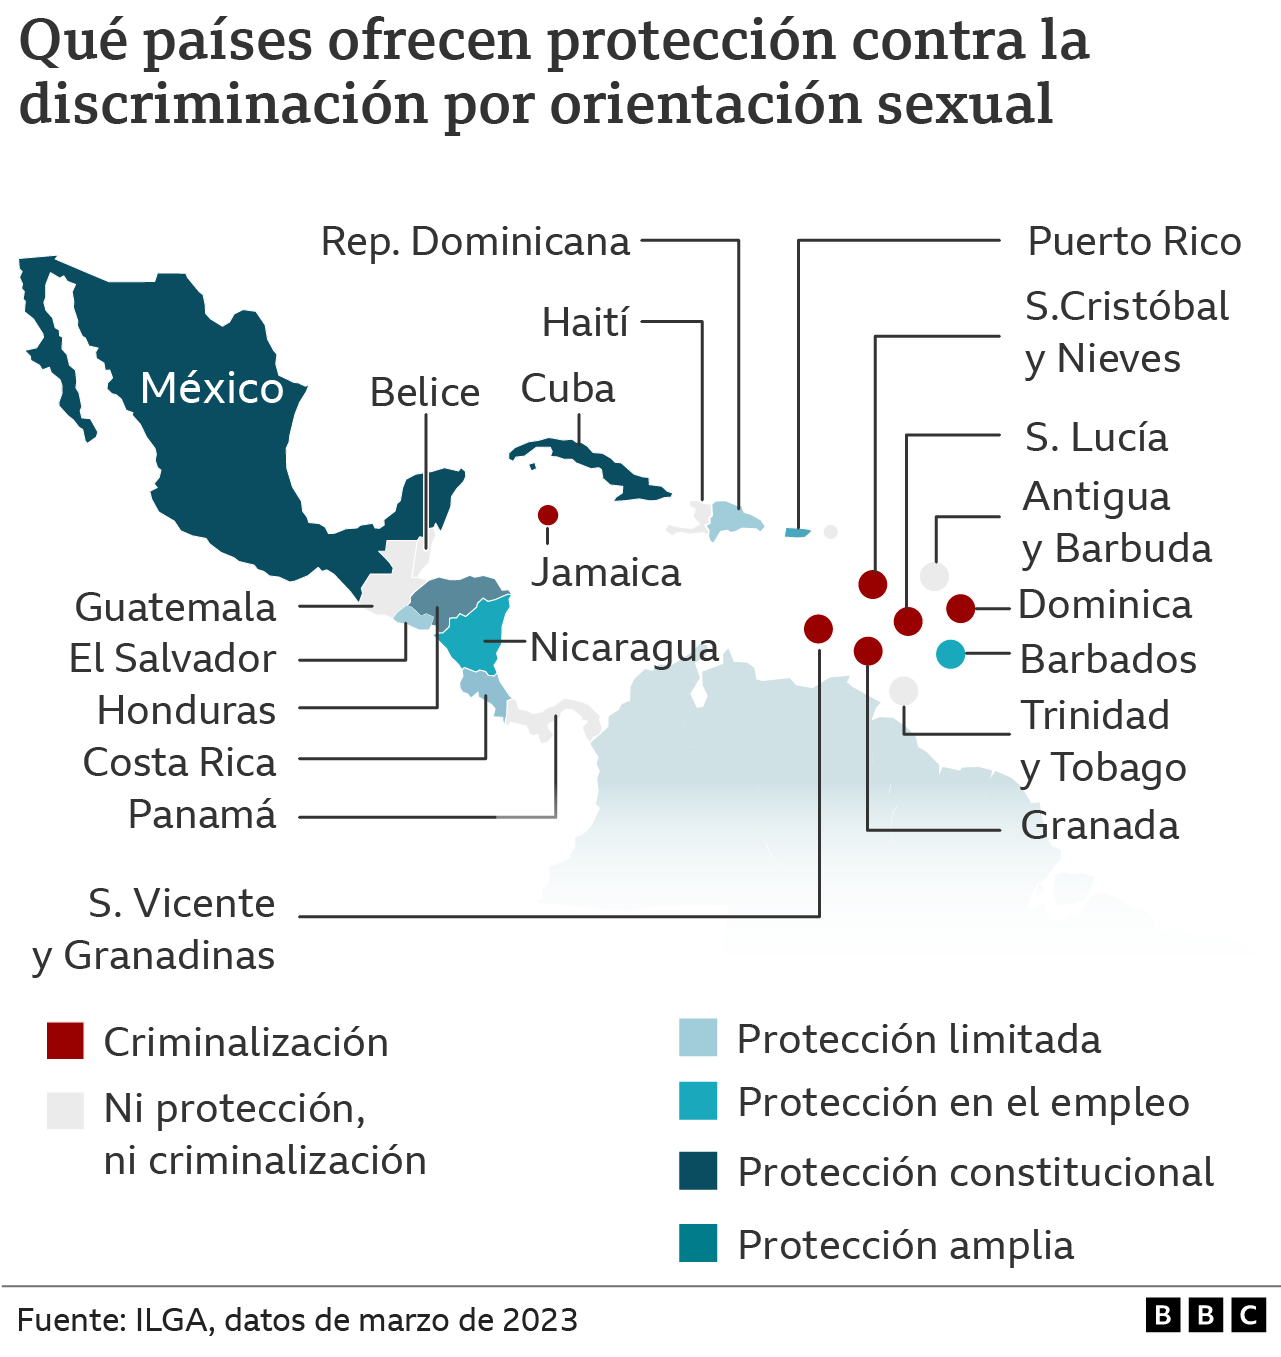 Mapa de la situación de las personas homosexuales en Centroamérica y el Caribe.